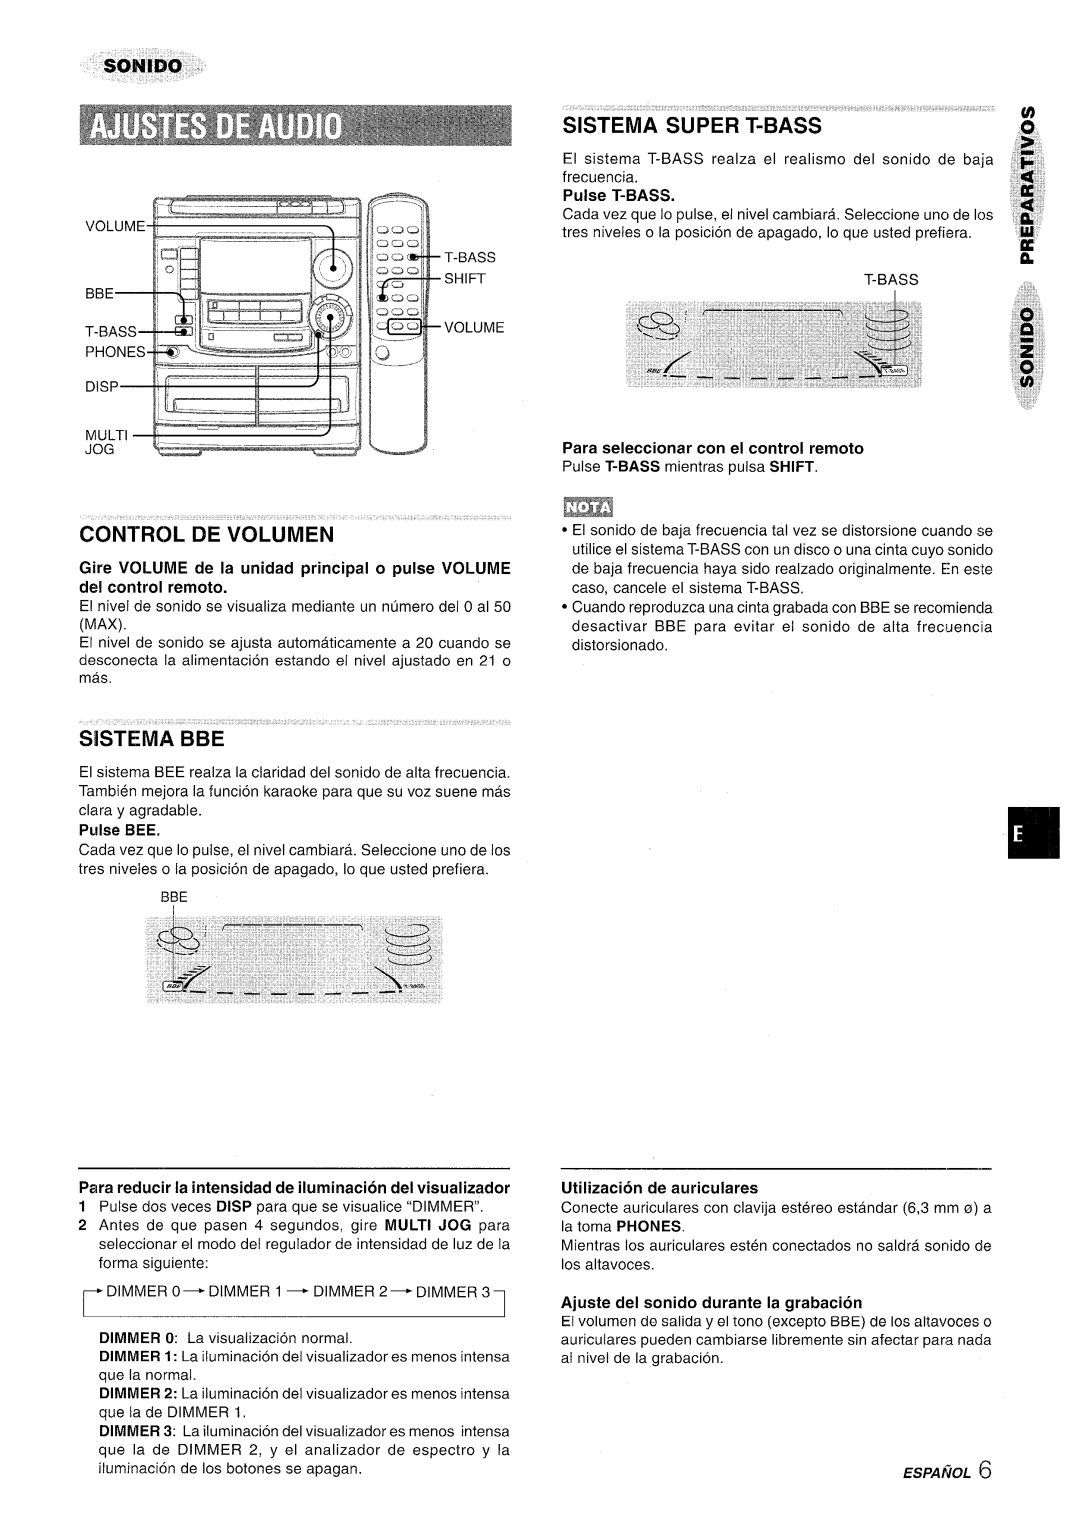 Aiwa NSX-A508 manual Control De Volumen, Pulse T-BASS 